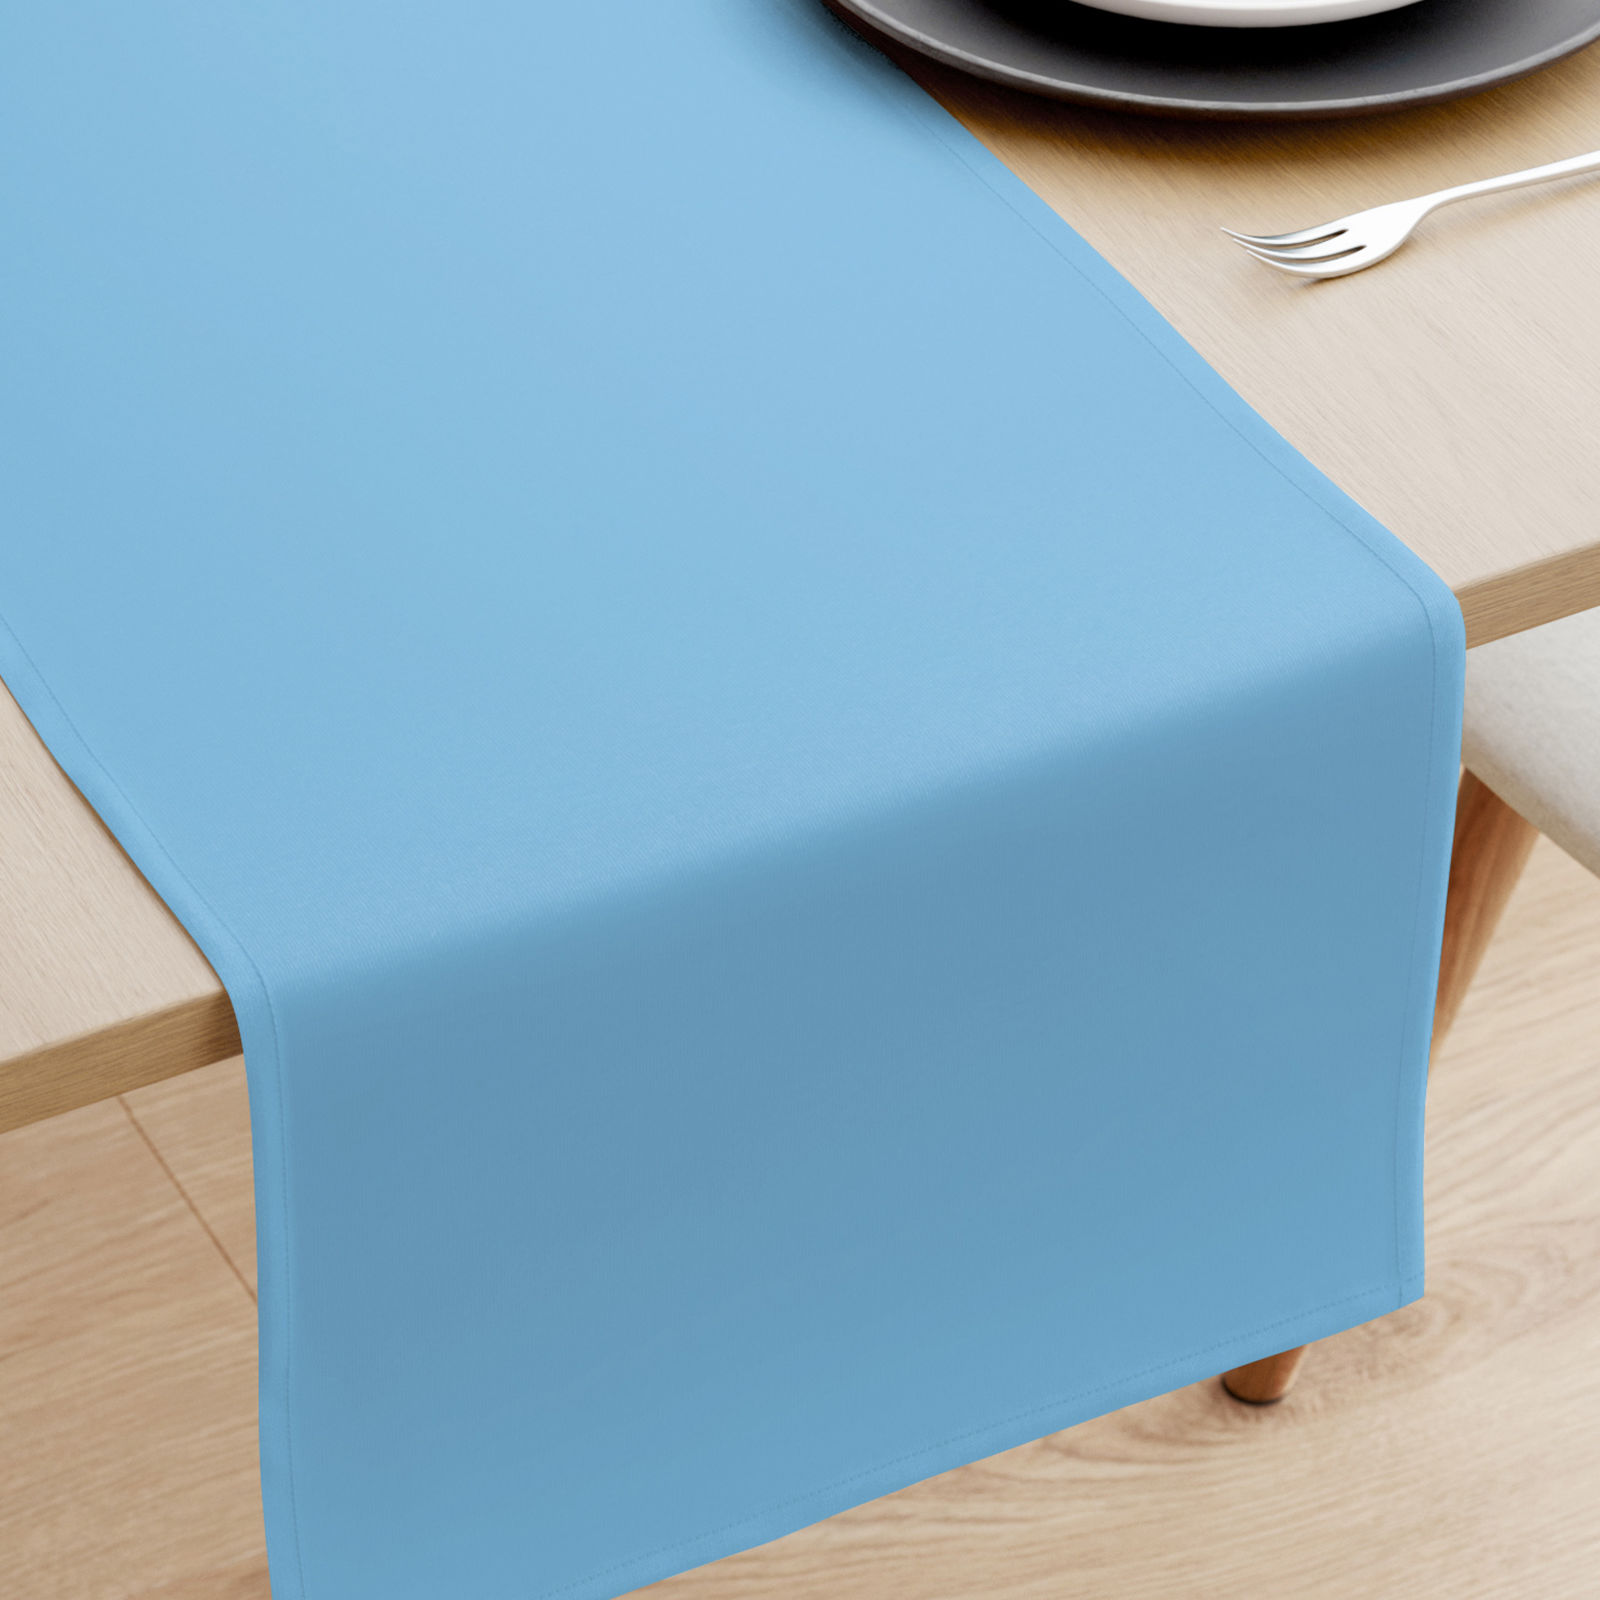 Bieżnik na stół z płótna bawełnianego - niebiański błękit